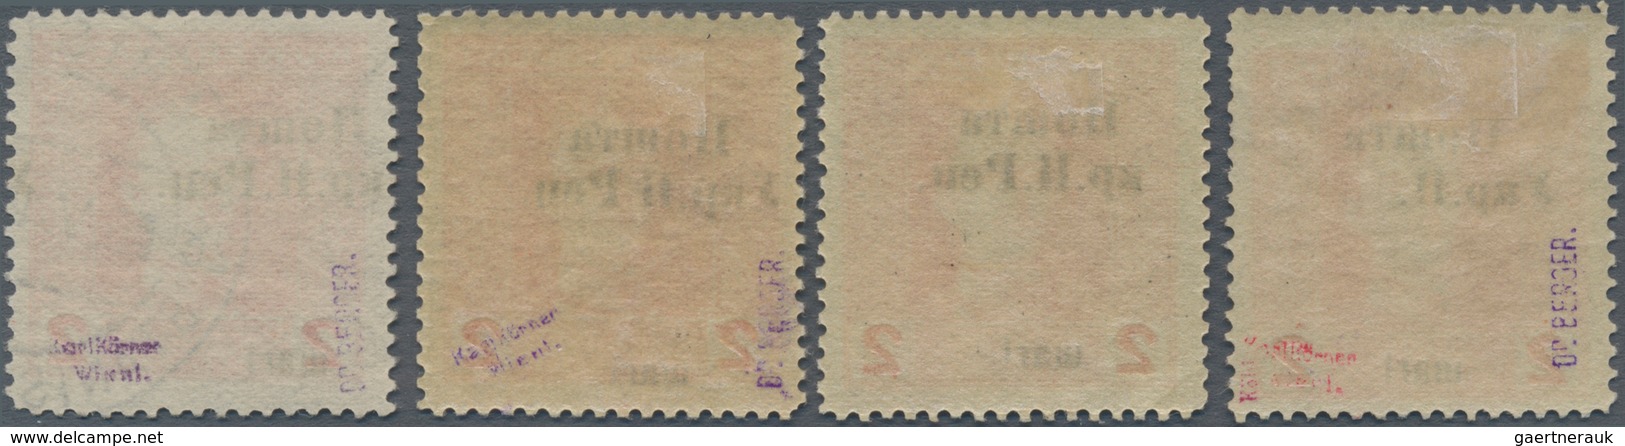 Westukraine: 1919, Postage Stamp. Austrian-Hungarian Field Post With Overprint 2 Schari With Differe - Oekraïne